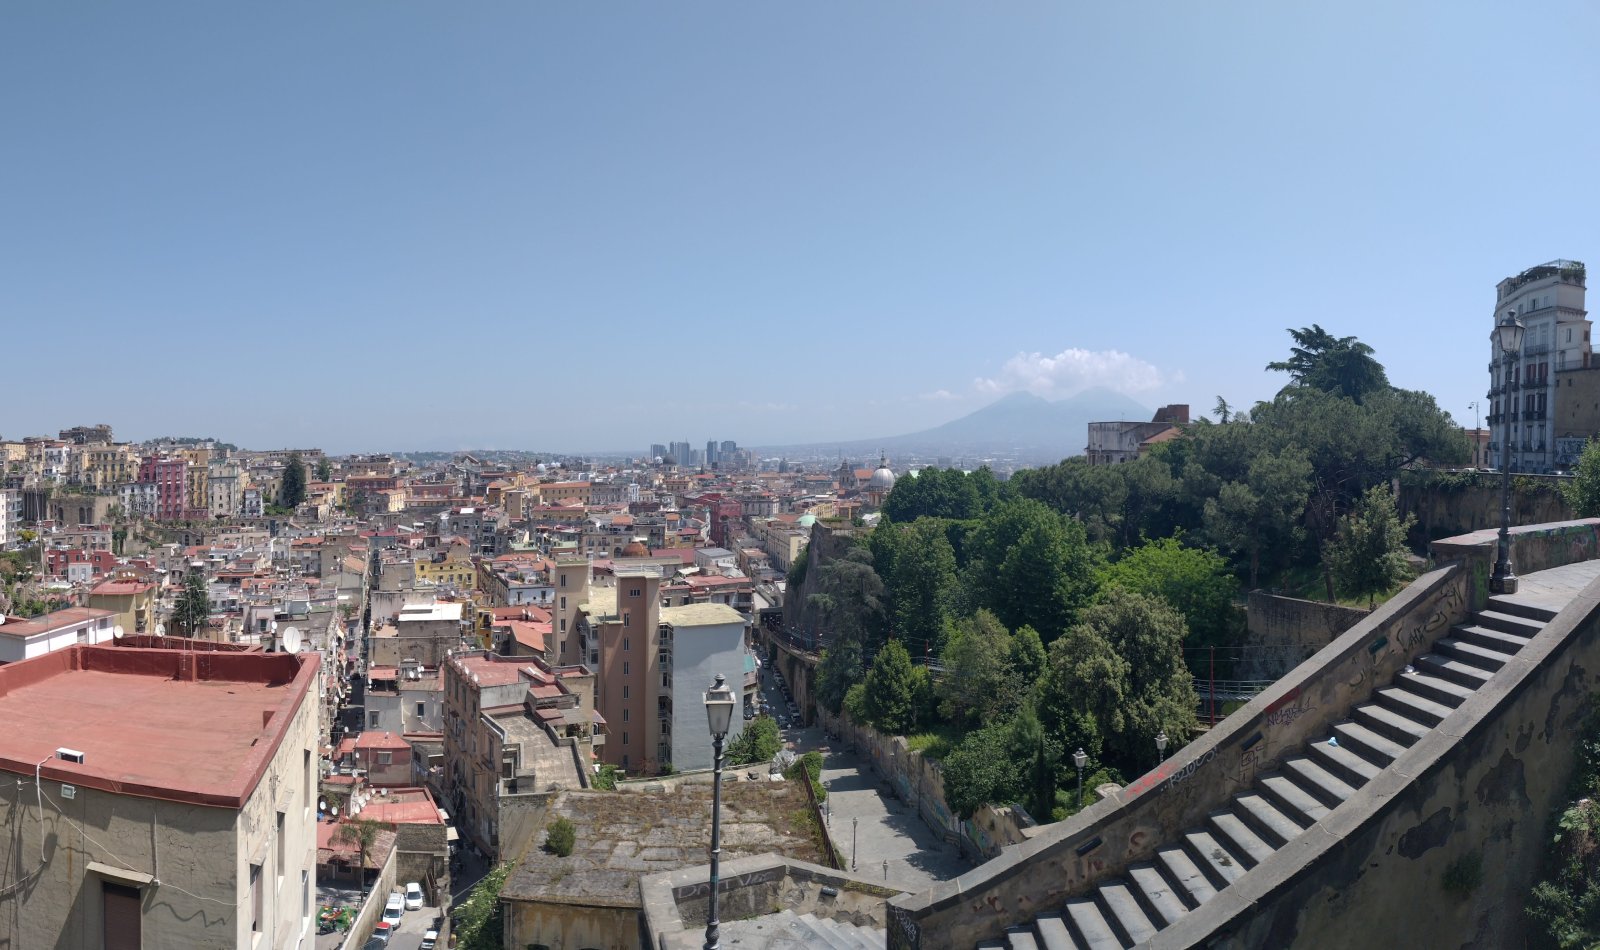 Pedamentina di Napoli vista dall'alto